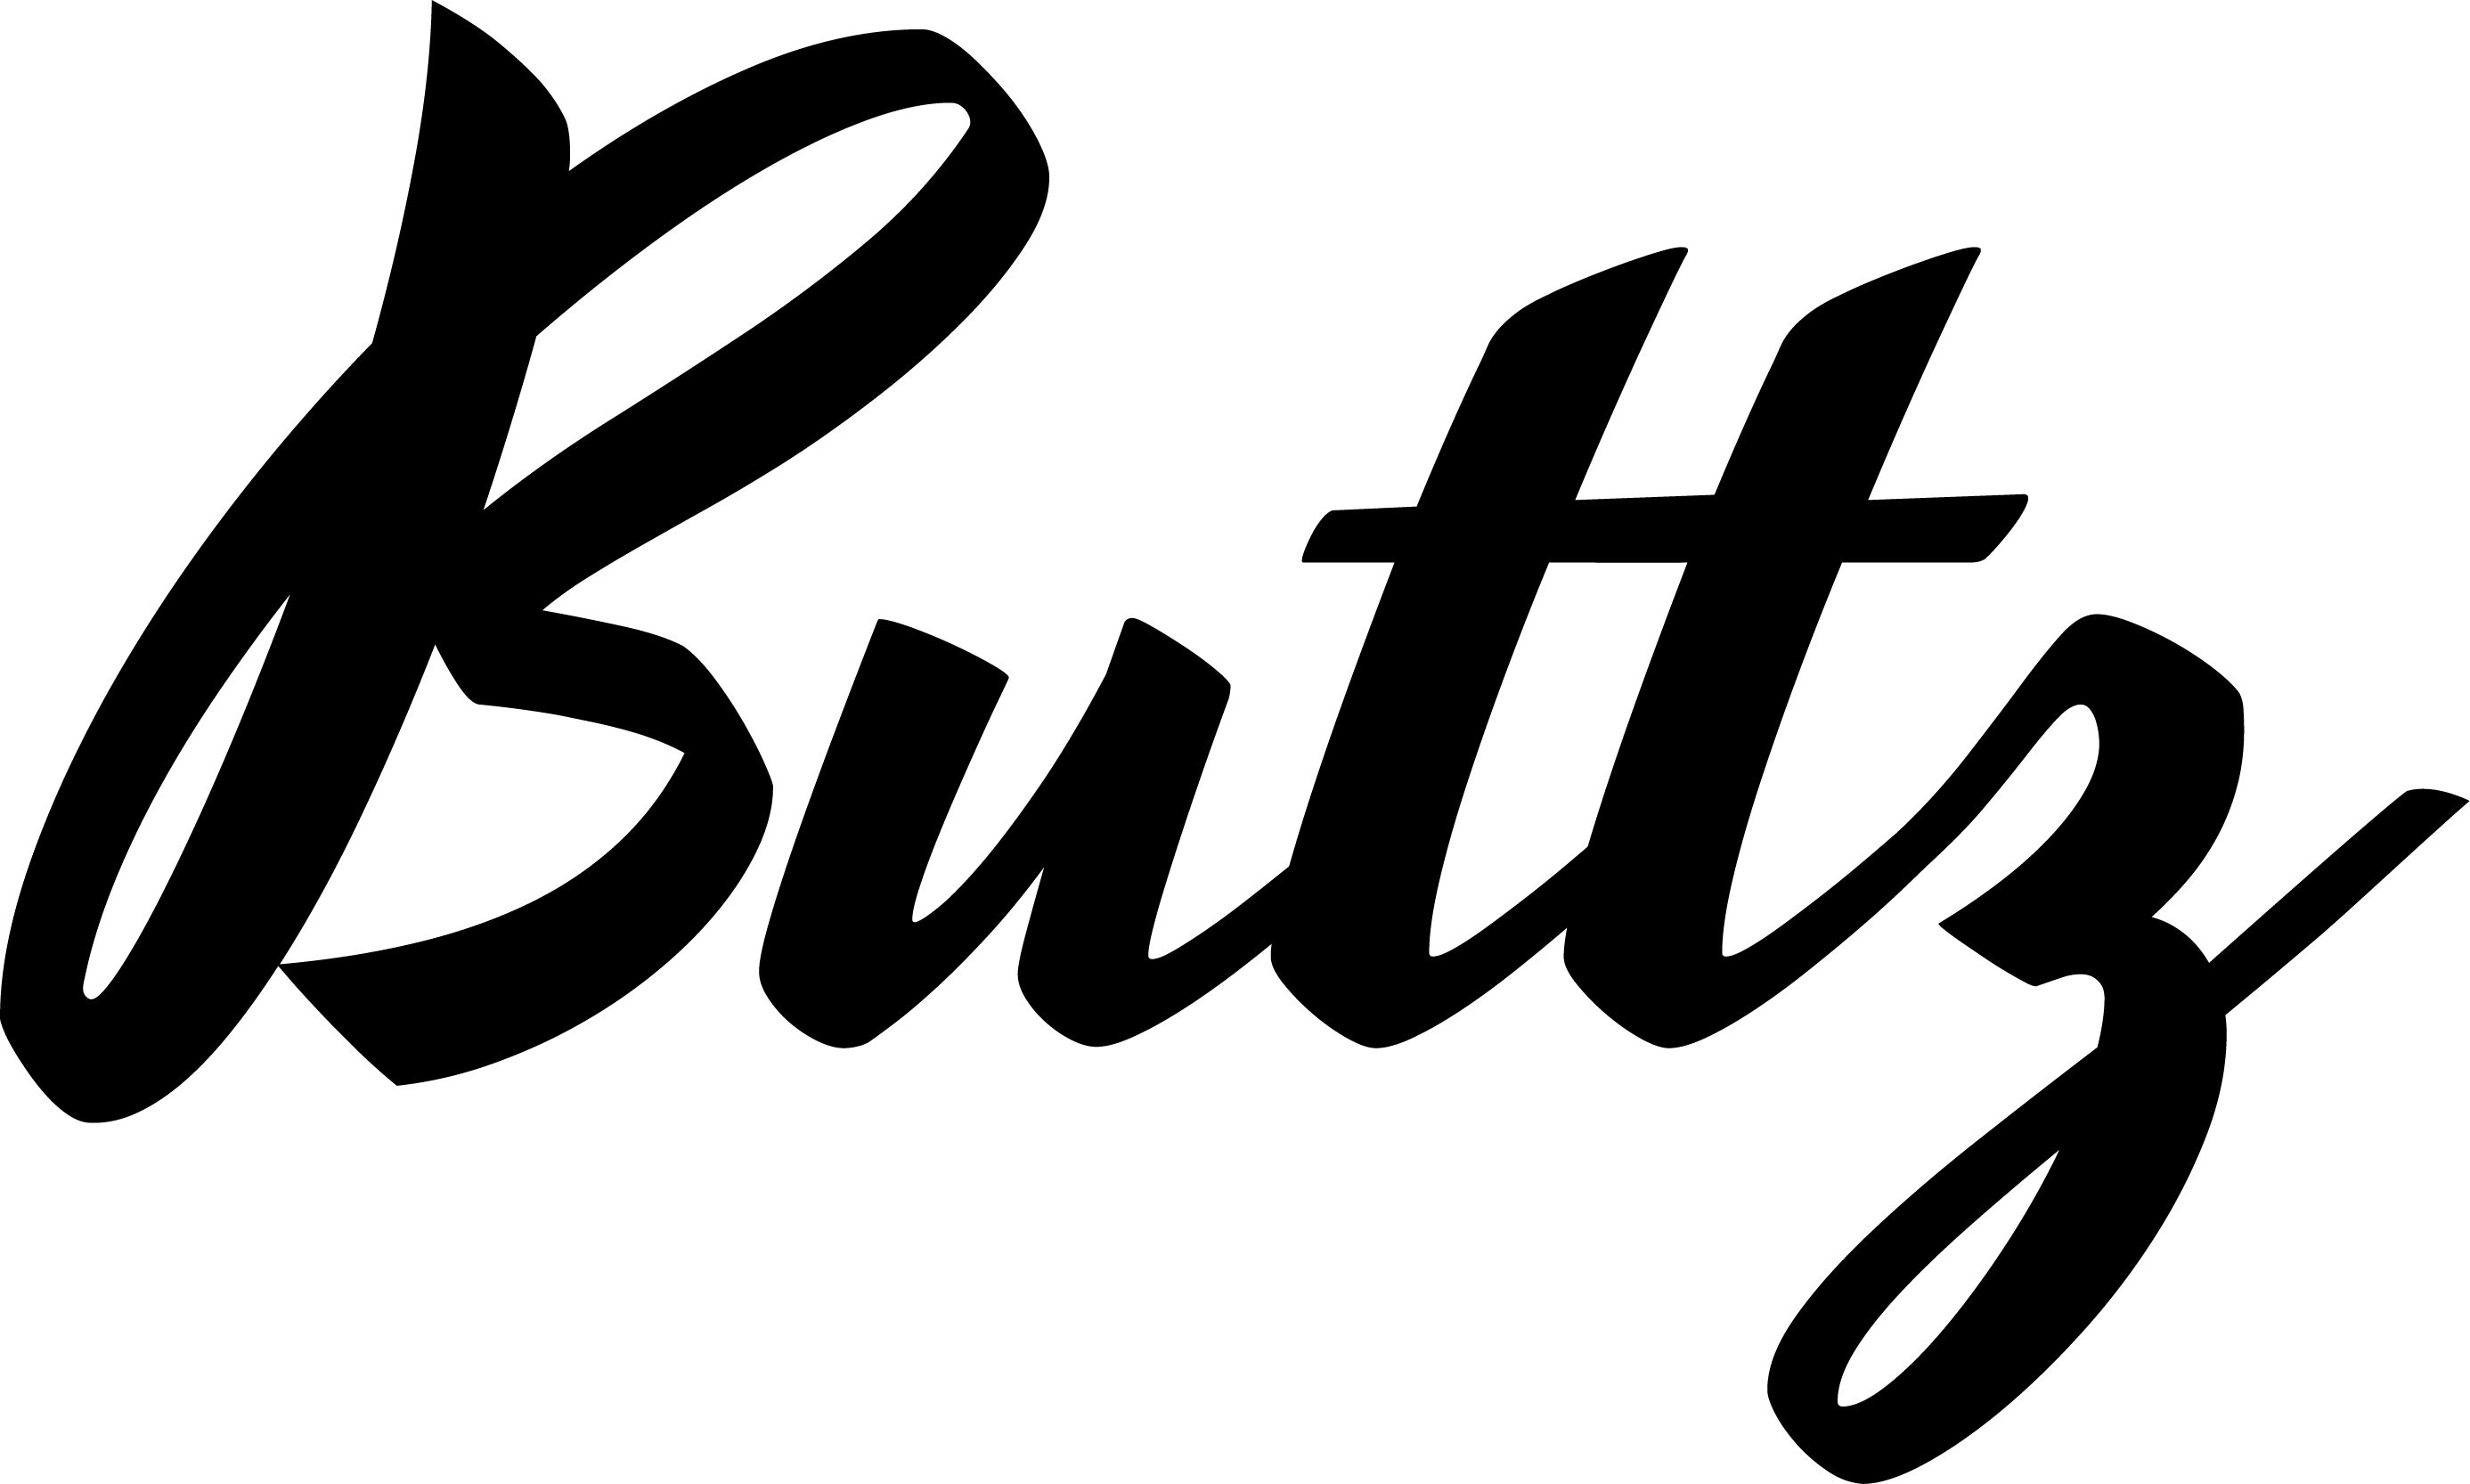 Buttz